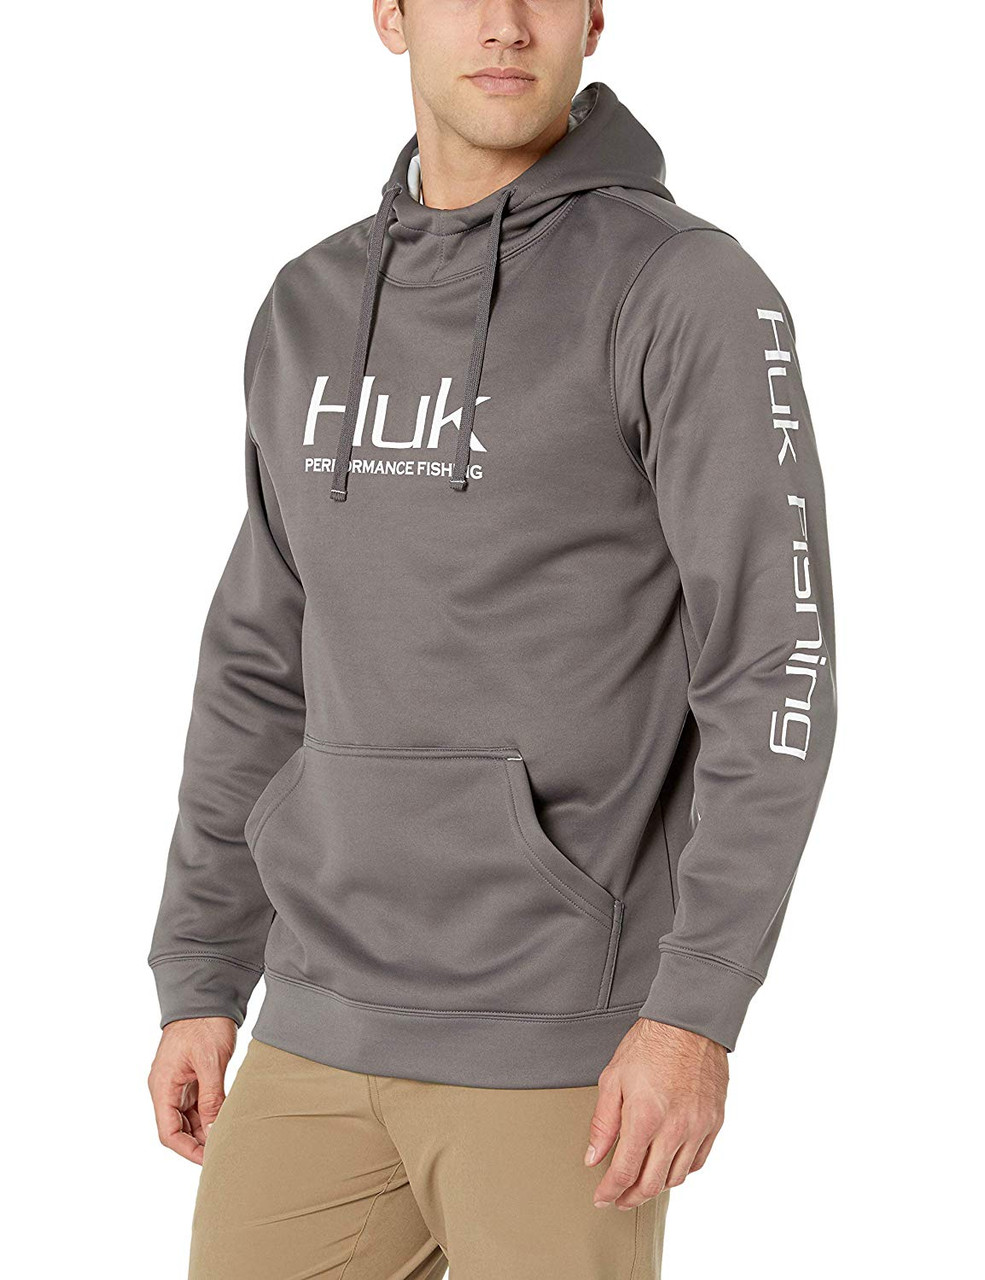 Huk Fishing Men's Performance Hoodie, Grey, Extra Large - H1300022-010-XL